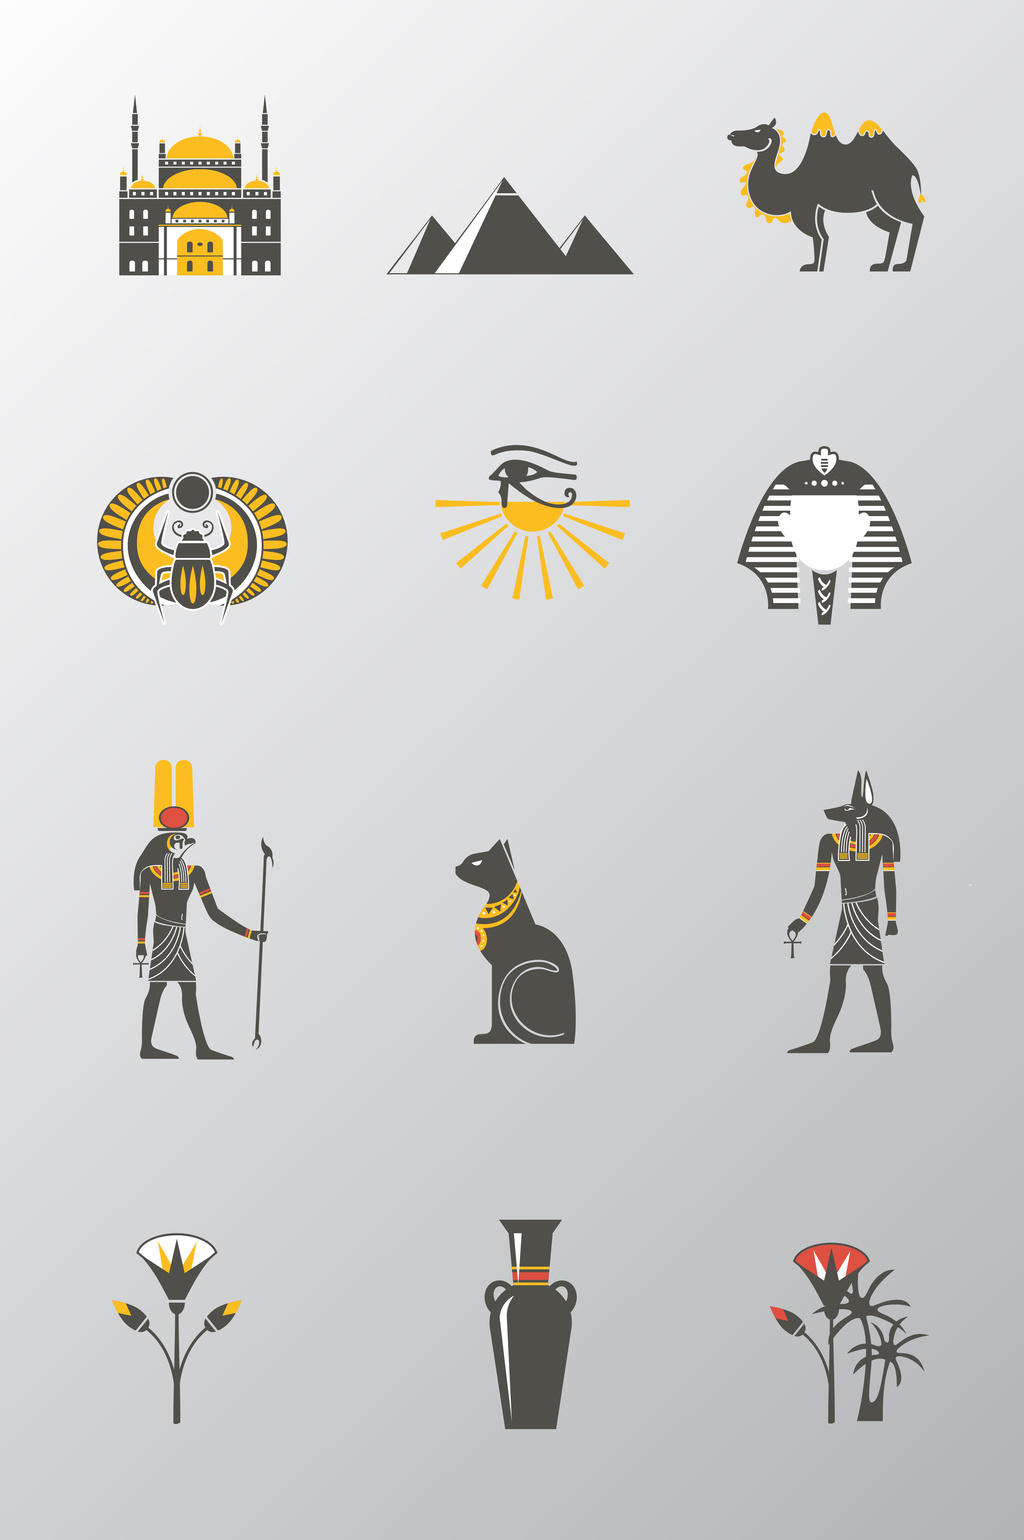 古埃及文化符号设计矢量素材